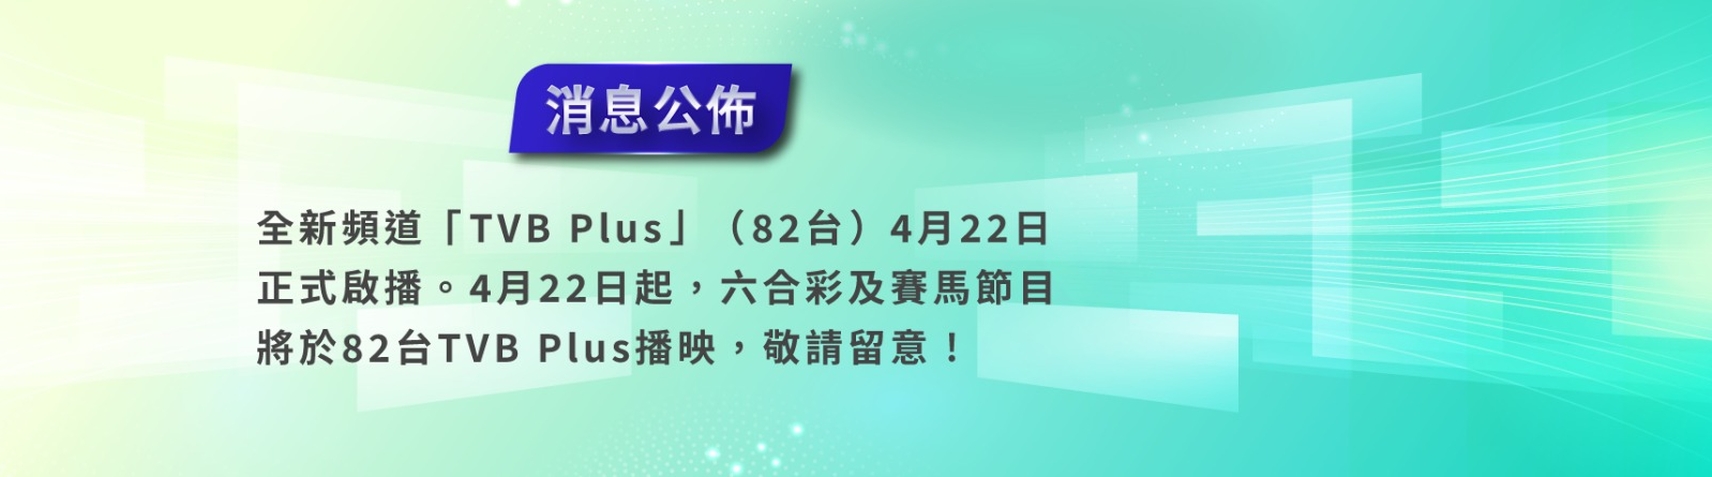 82台TVB Plus將啟播